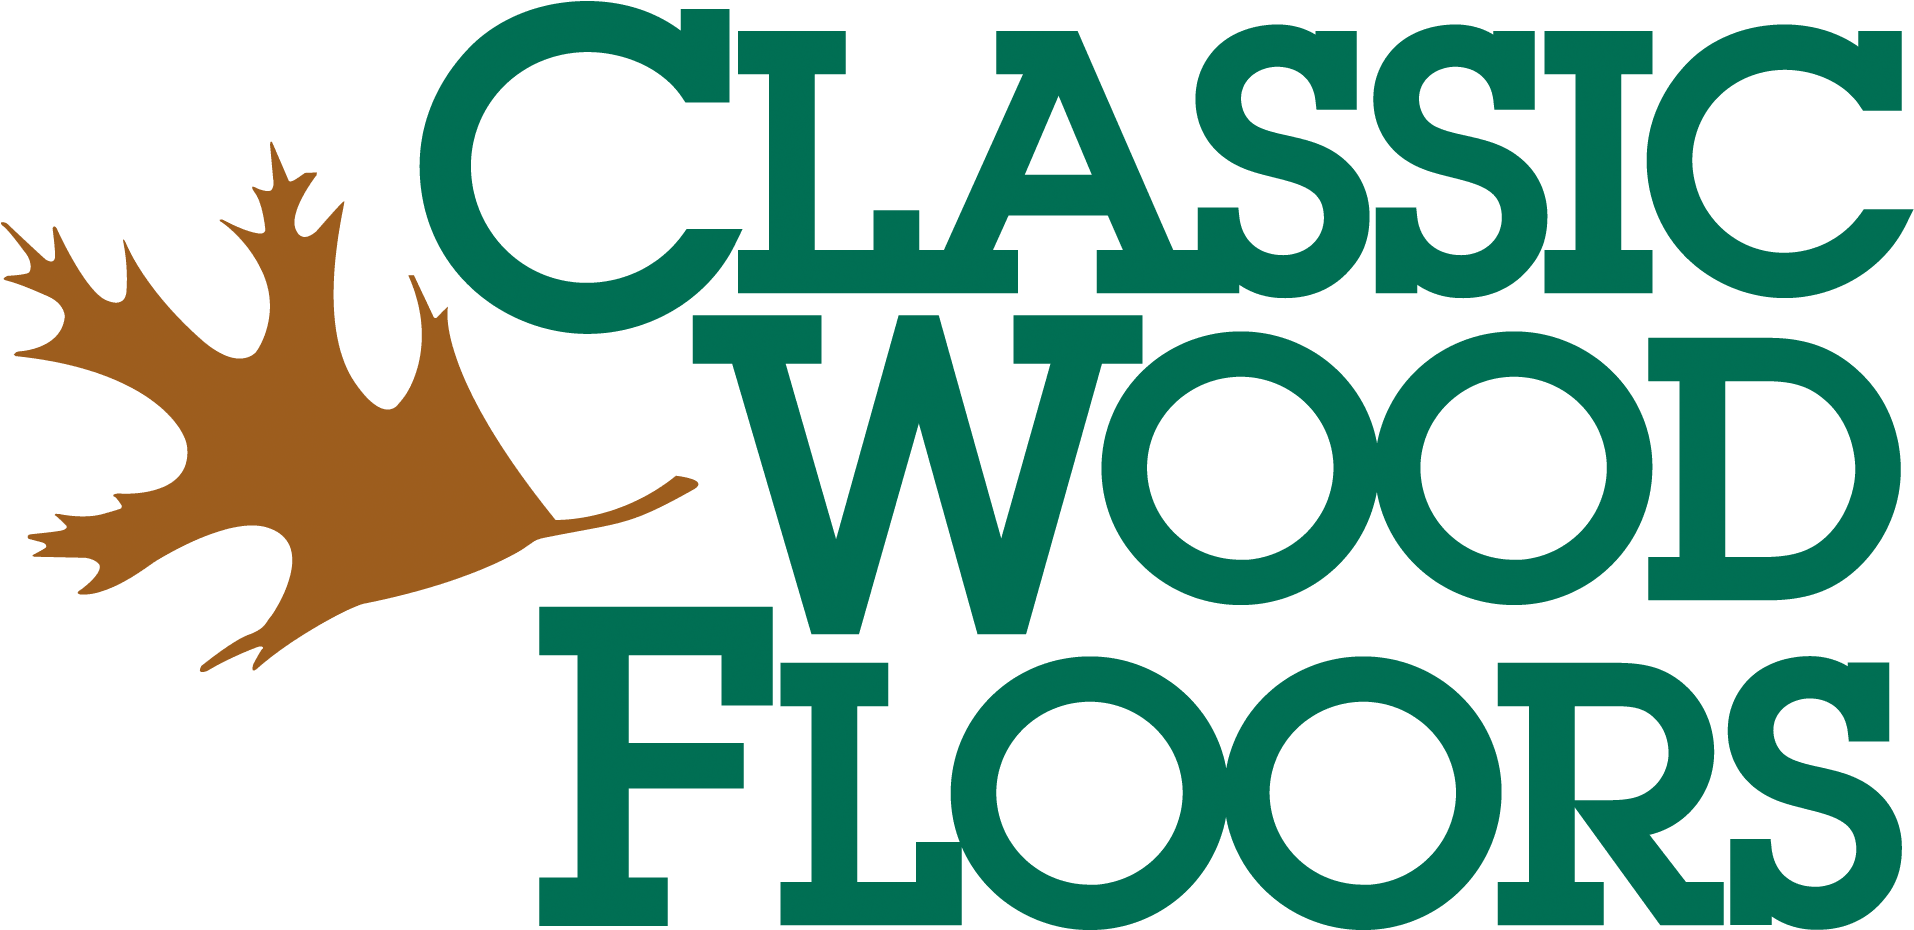 523 W - Classic Wood Floors (1924x935)